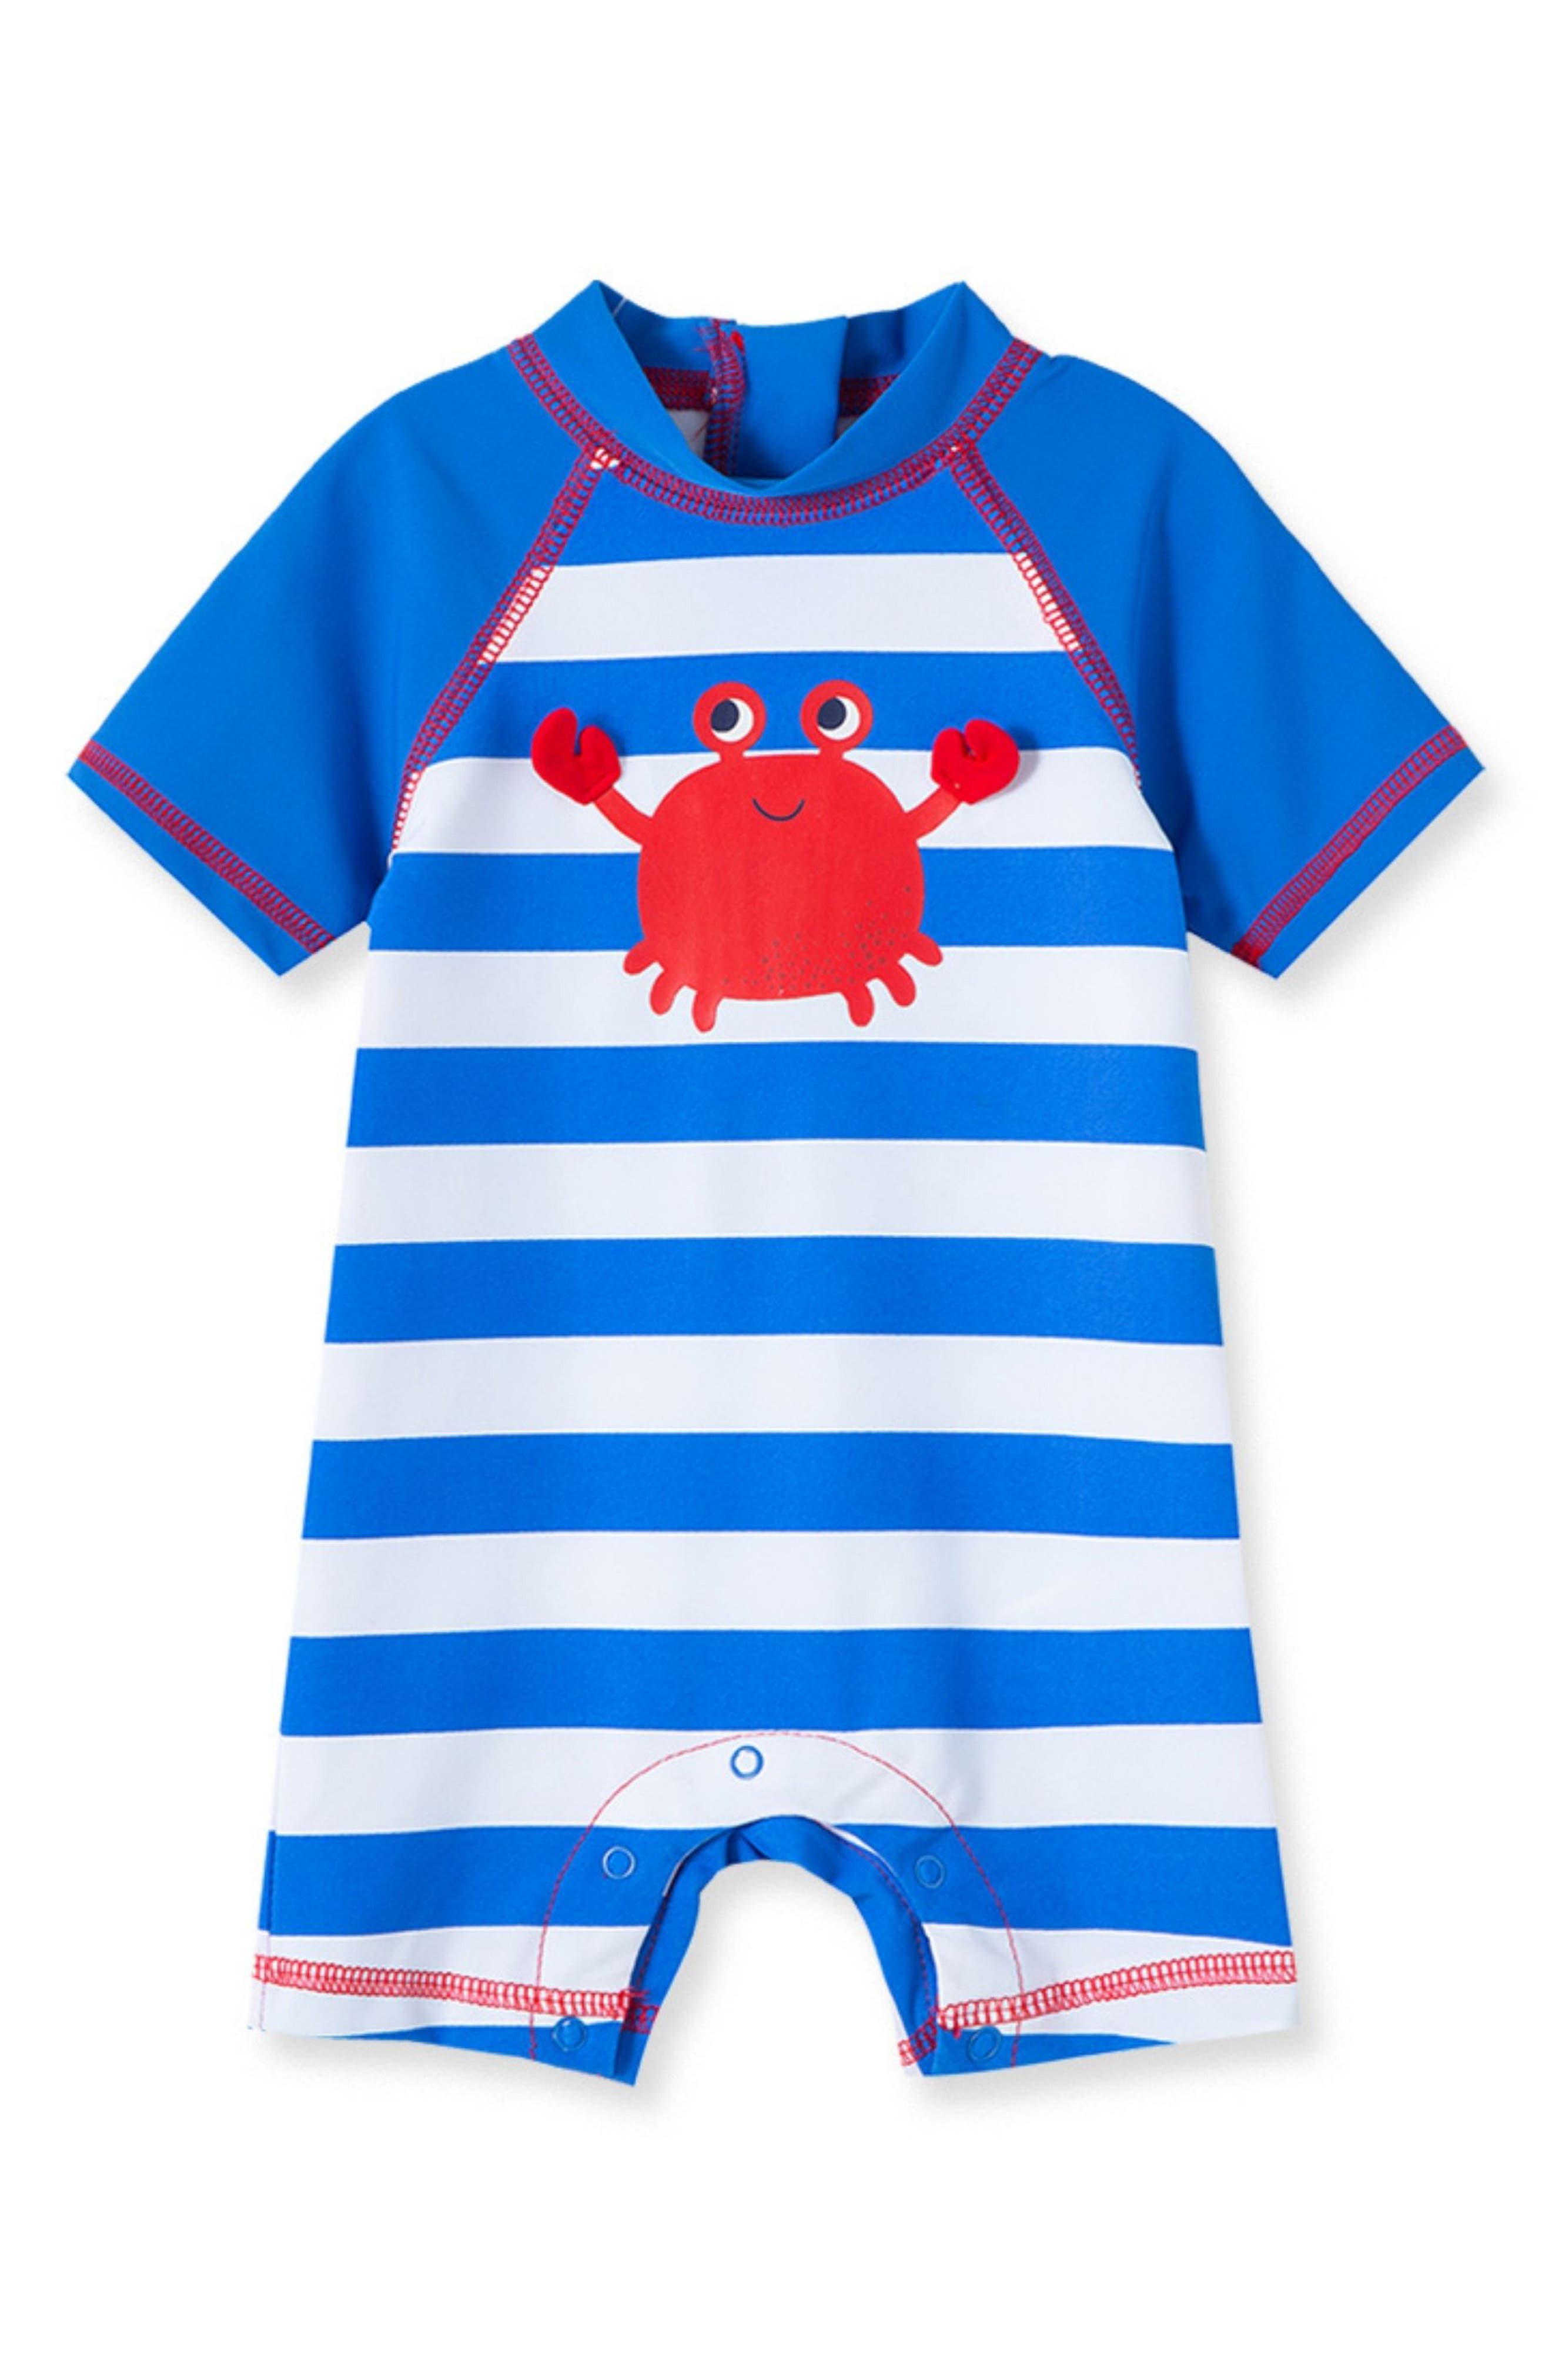 Crab Monogram kids shirt Boy Crab Shirt Boy Crab Bodysuit KidsBaby Shirt Red Raglan Monogram Crab shirt